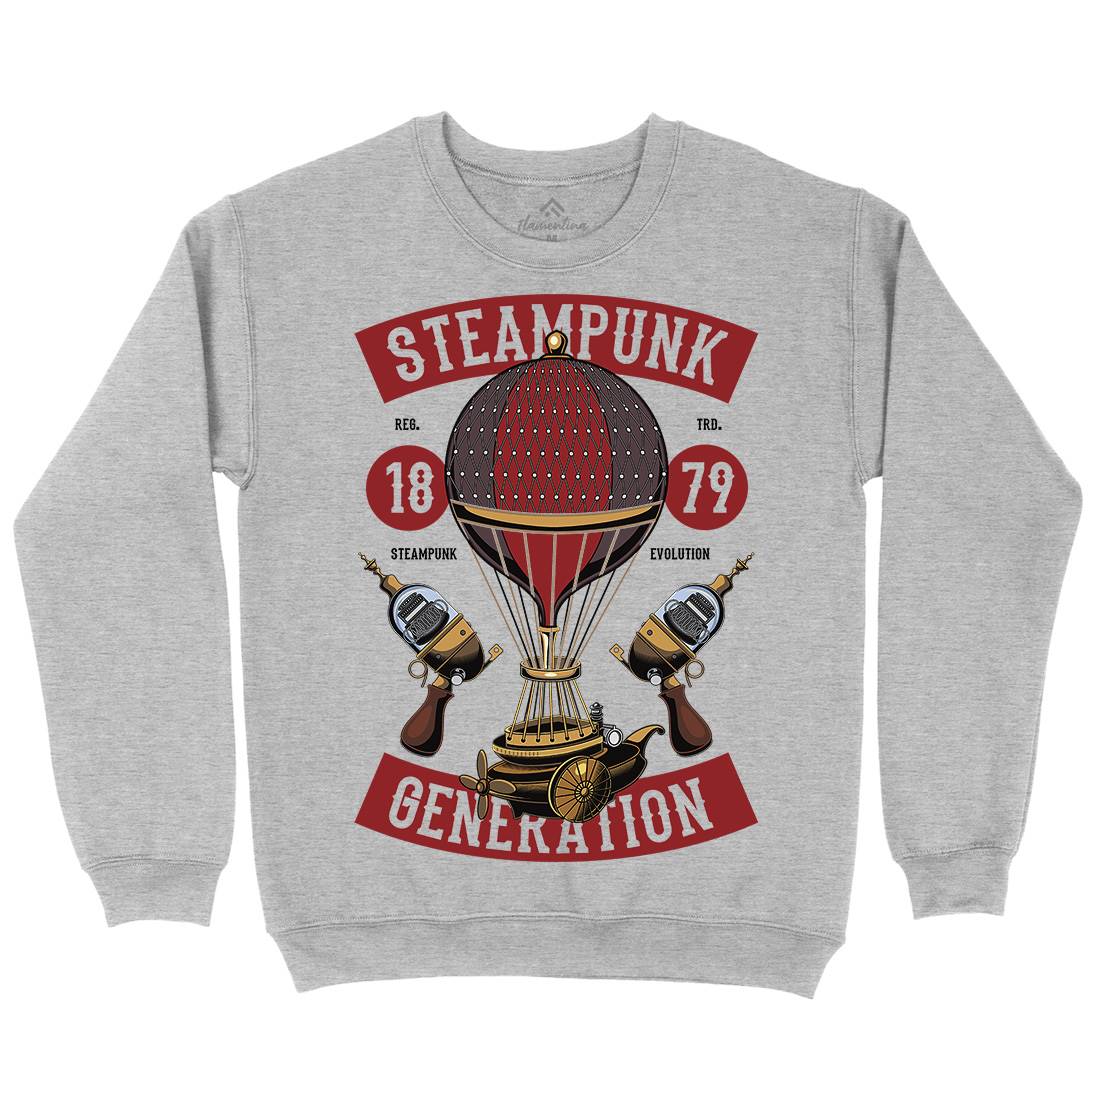 Generation Kids Crew Neck Sweatshirt Steampunk C449